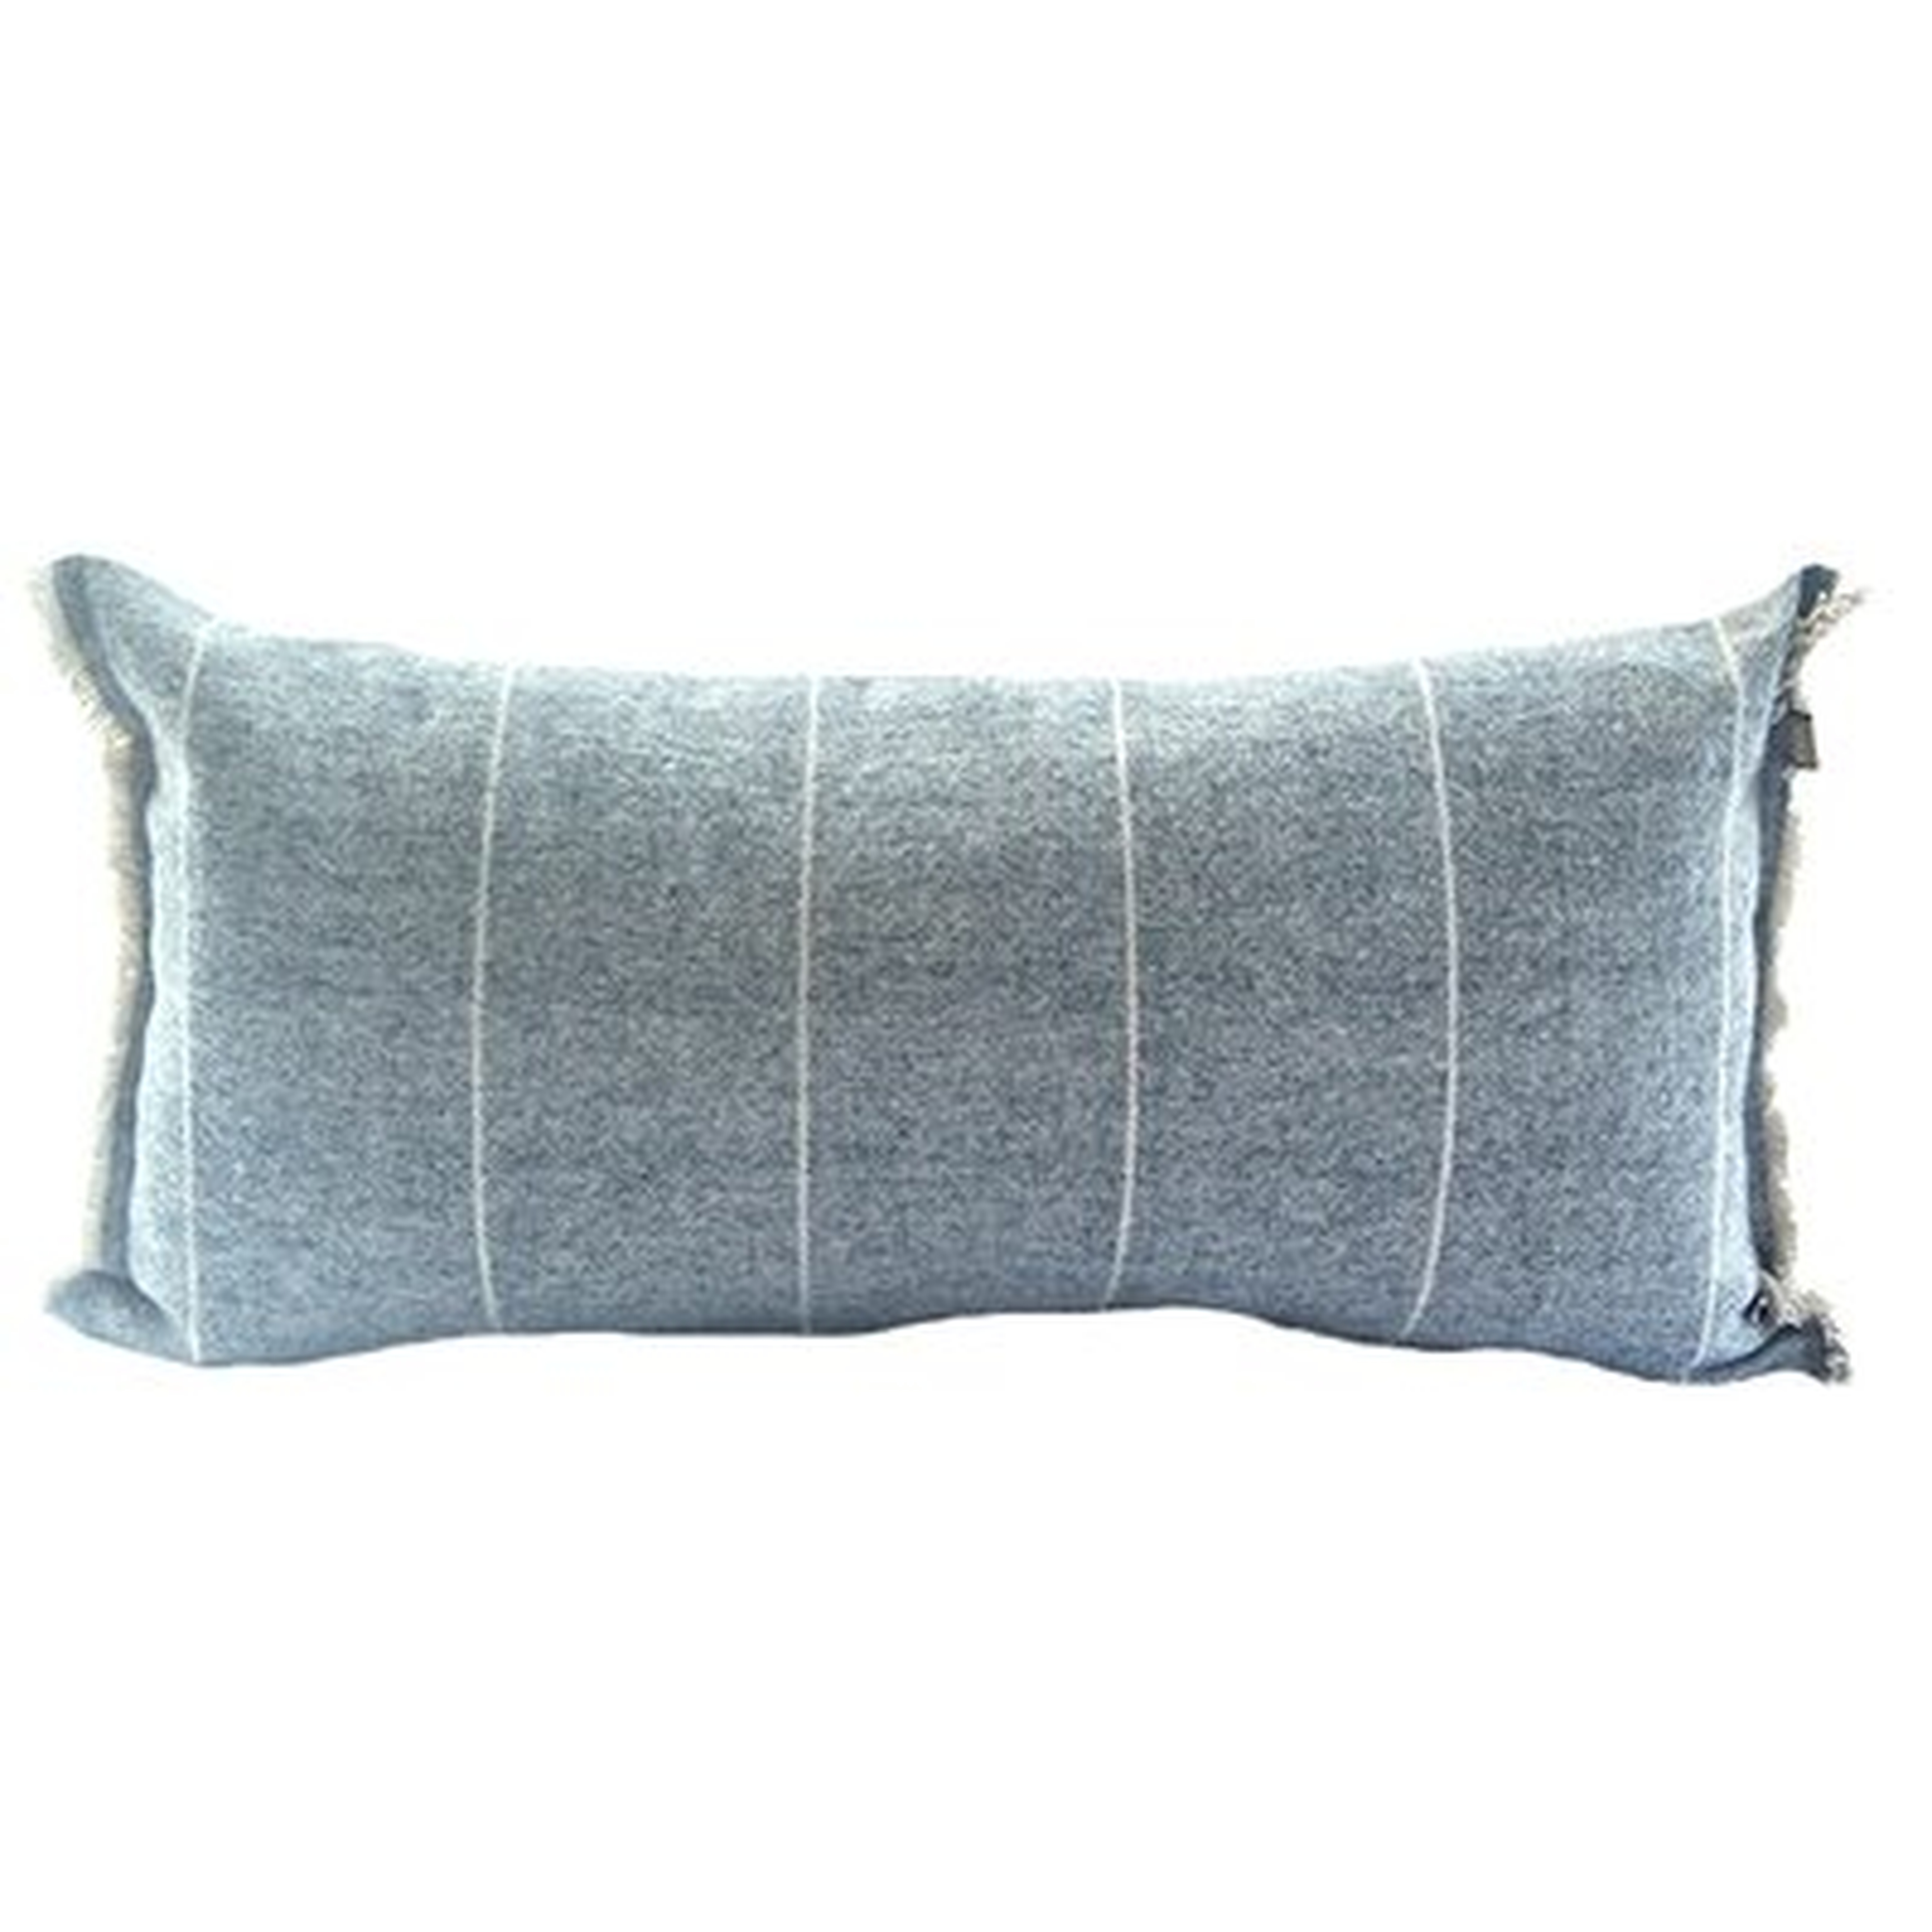 Nolhan Rectangular Cotton Pillow Cover & Insert - Wayfair